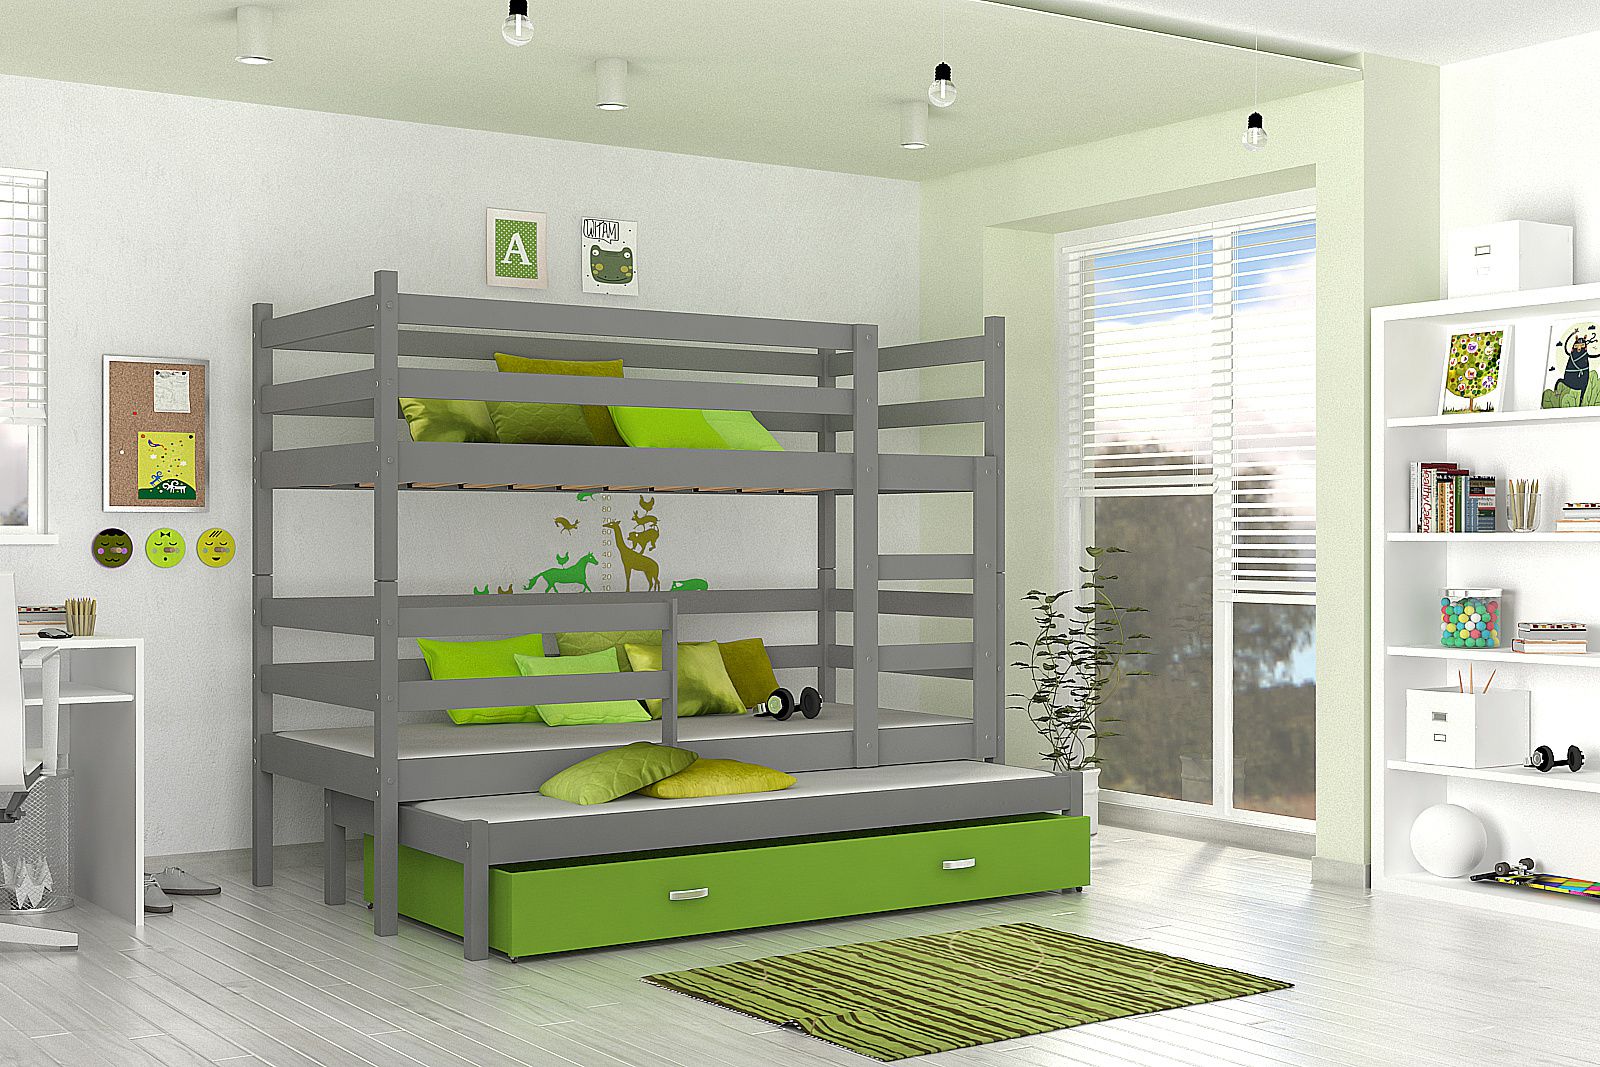 Dětská patrová postel RACEK B 2 COLOR + rošt + matrace ZDARMA, 190x80, šedý/zelený - Expedo s.r.o.